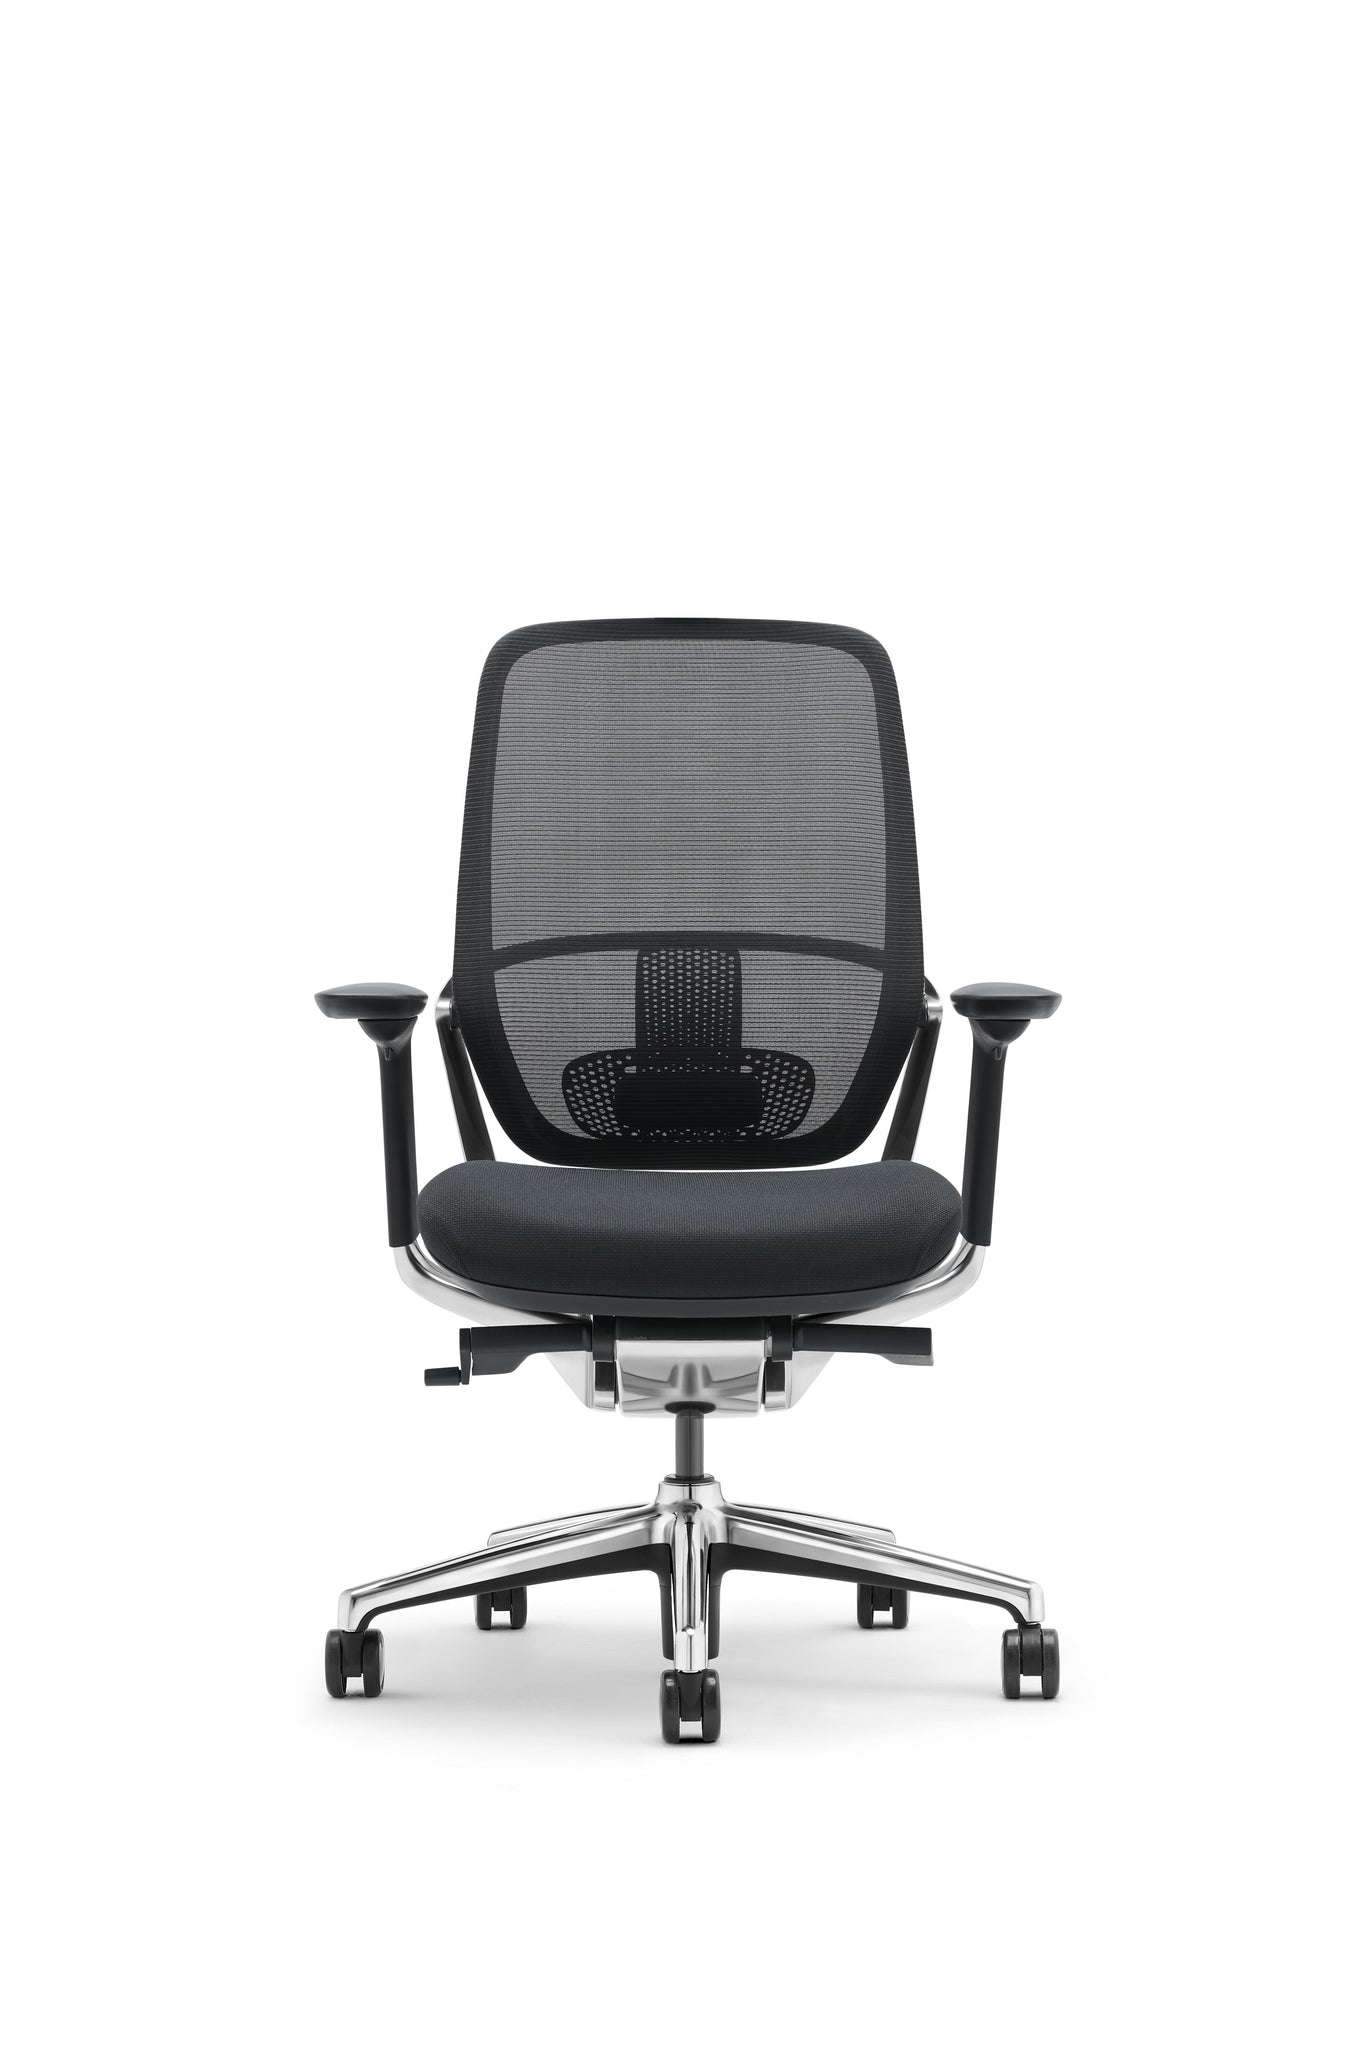 Sillón ejecutivo Legend respaldo bajo tapizado en mesh y asiento en tela con base aluminio